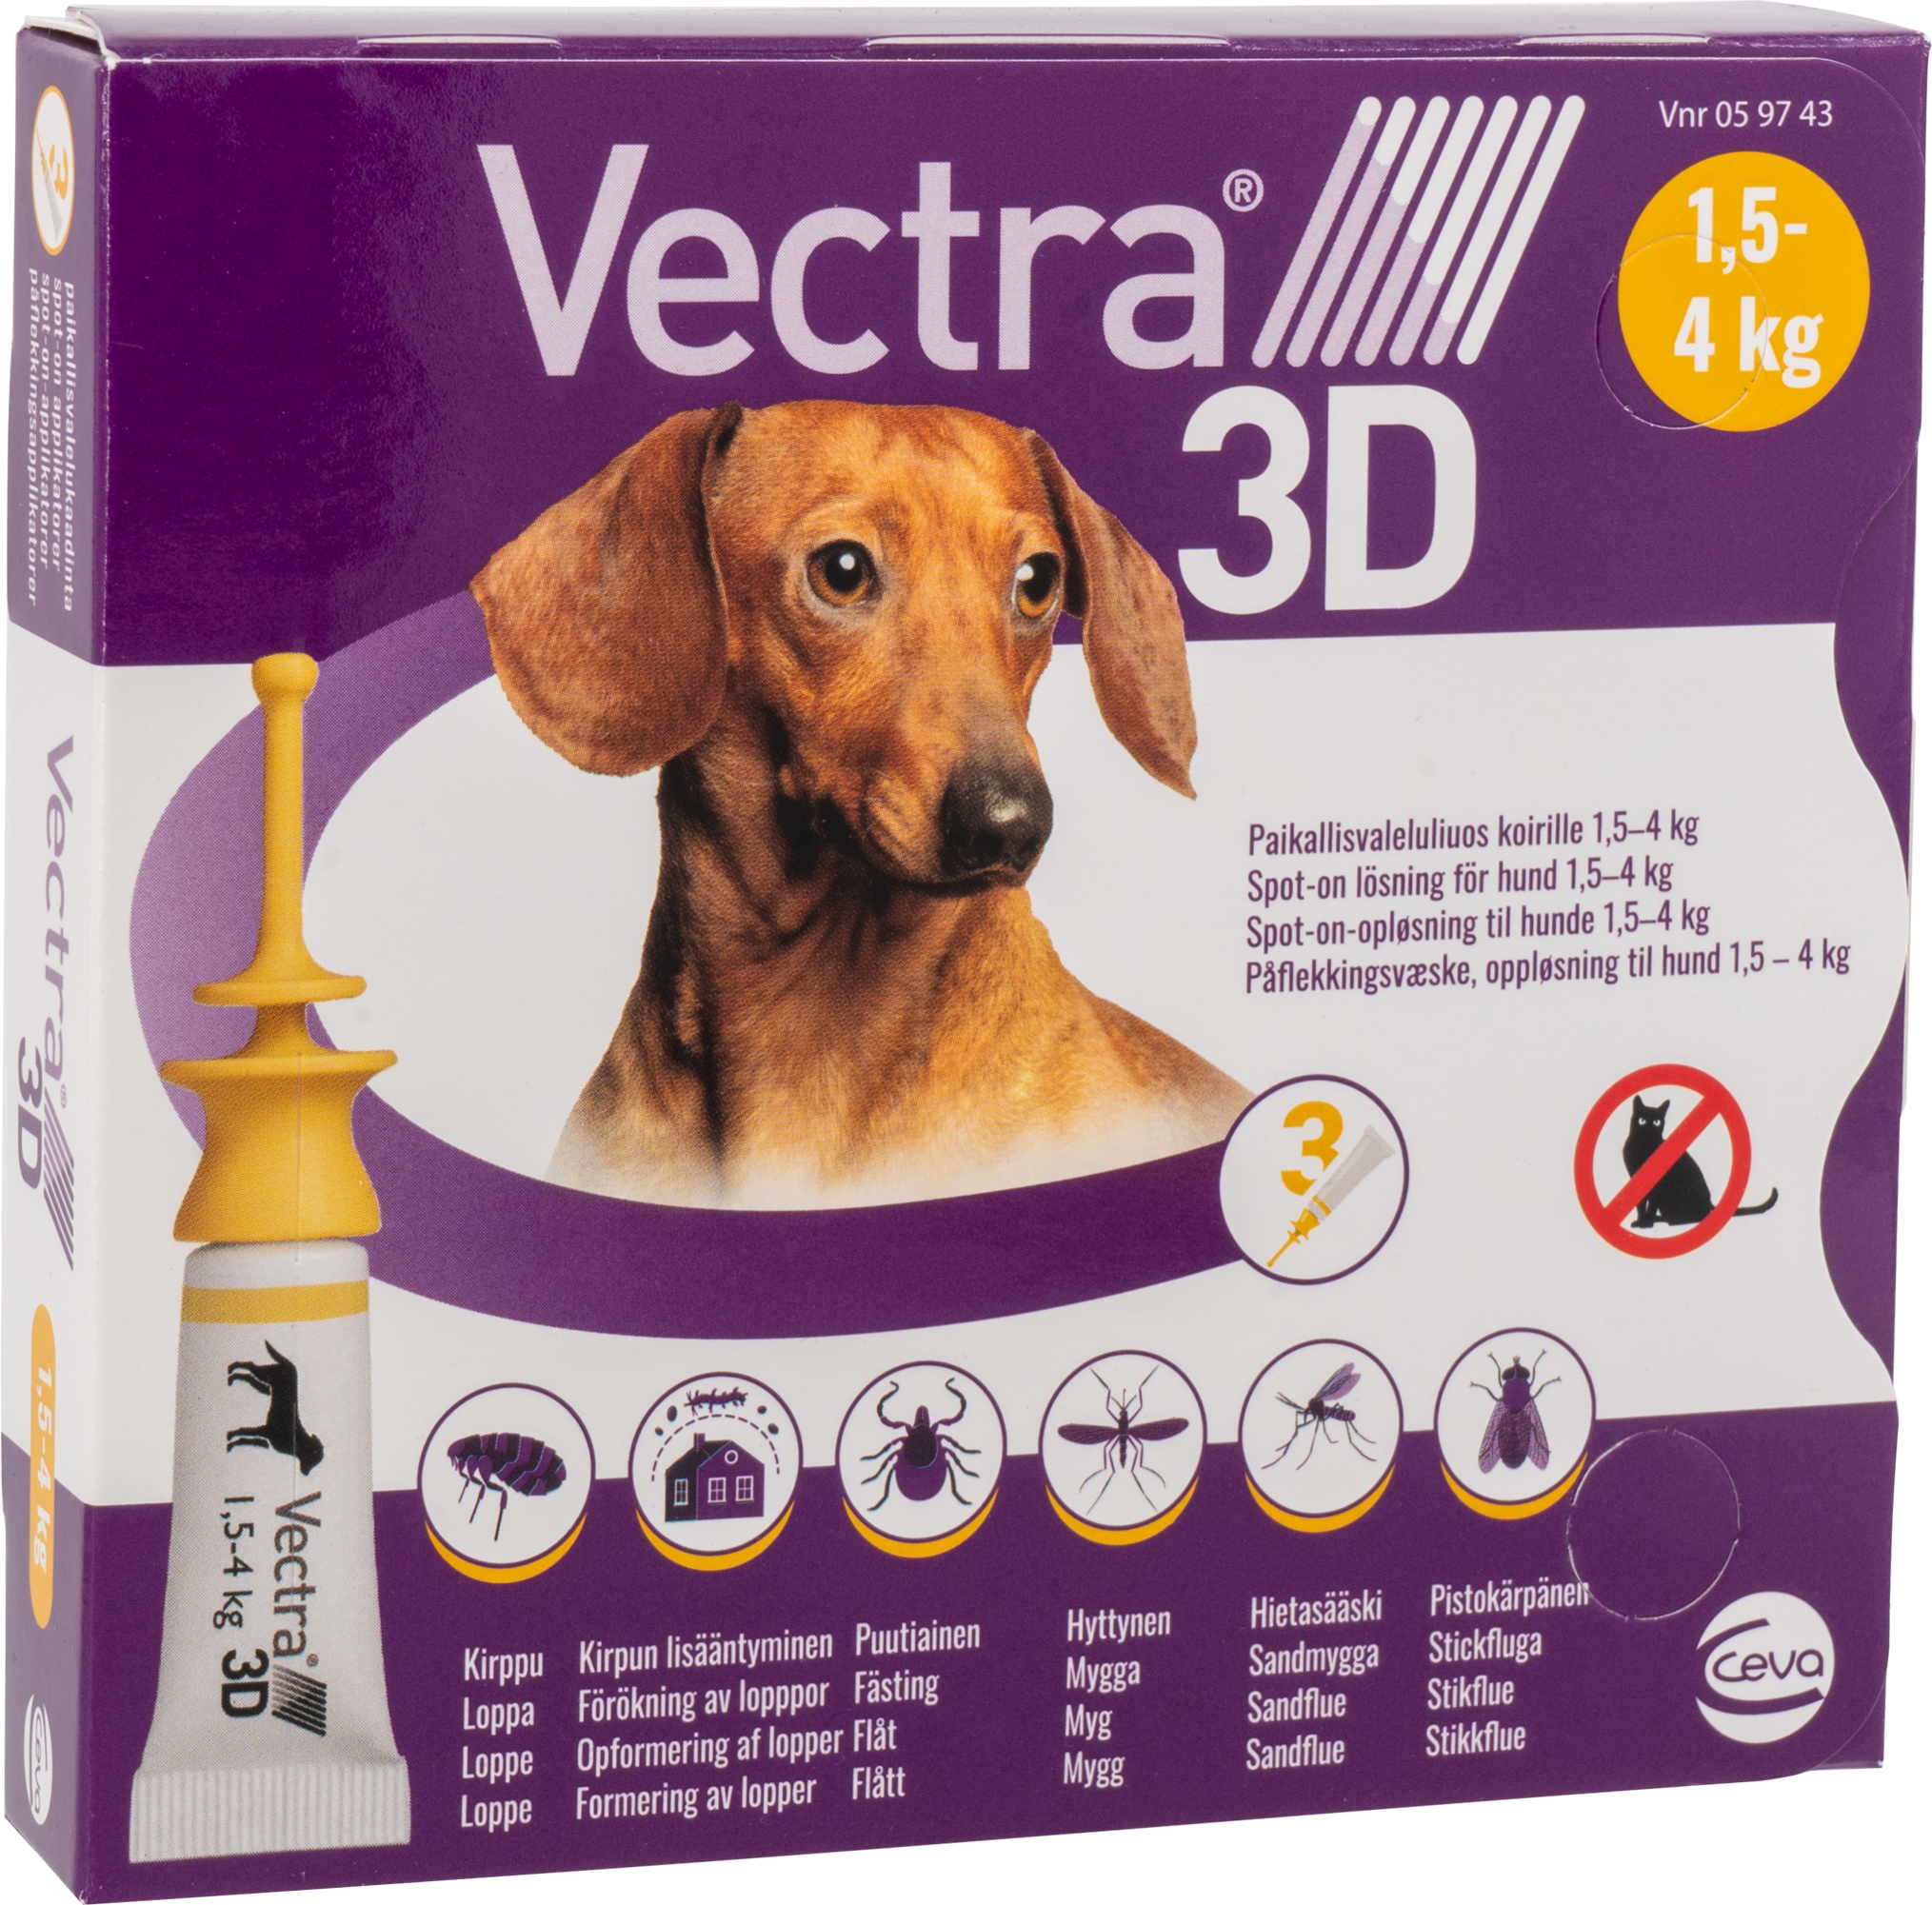 Vectra 3D - Spot-on-solution (Dogs) 1,5-4 kg 3pk - (059743) - Kjæledyr og utstyr